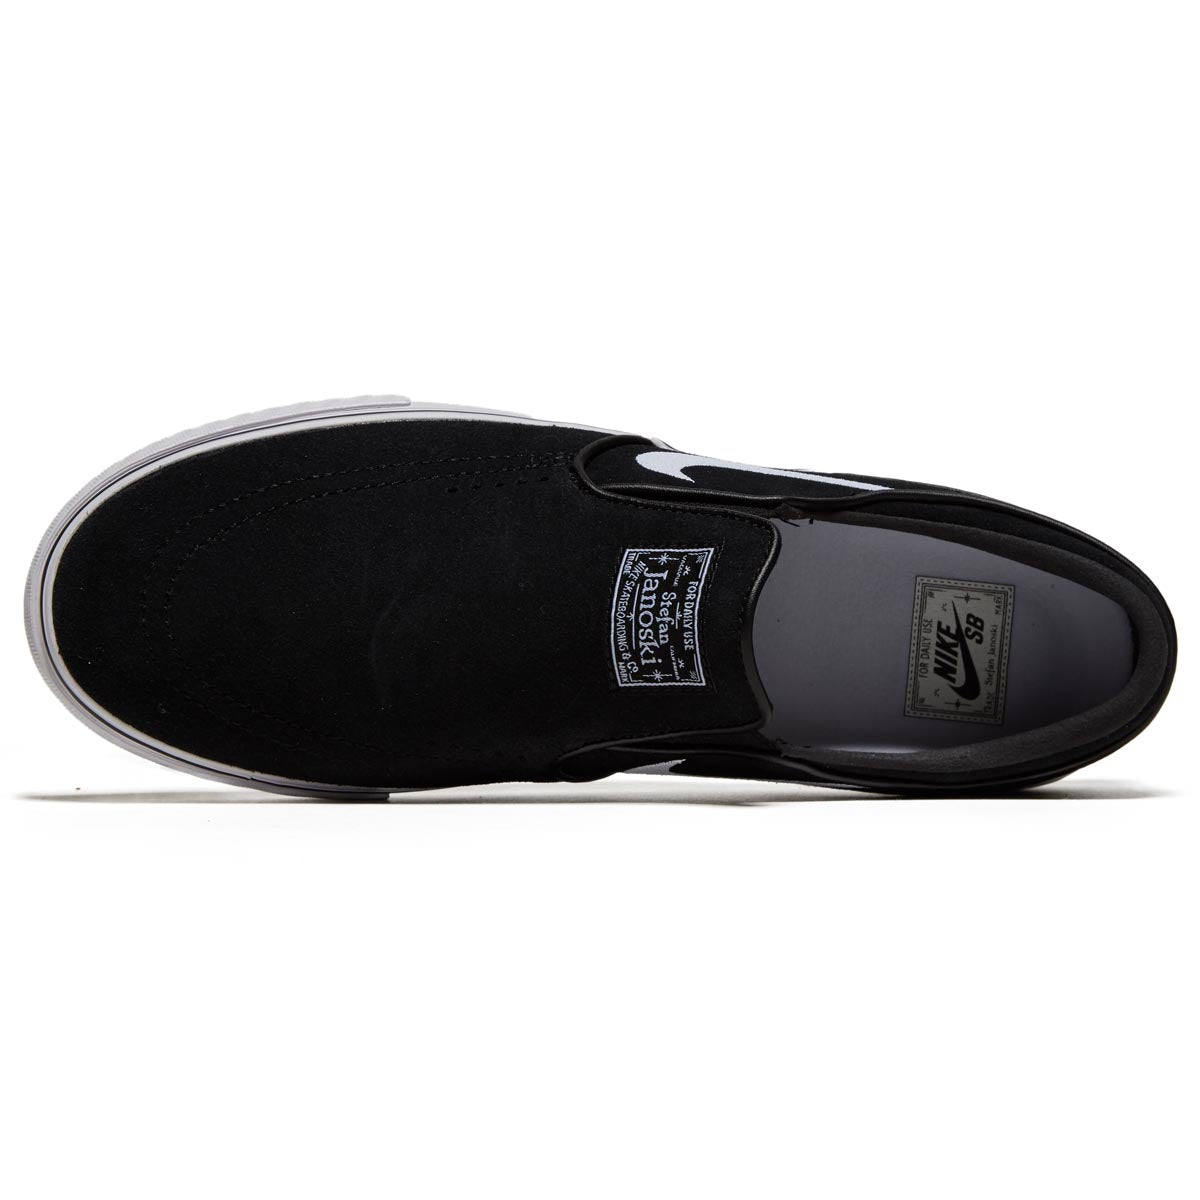 Nike SB Janoski+ Slip Shoes - Black/White/Black/Black image 3